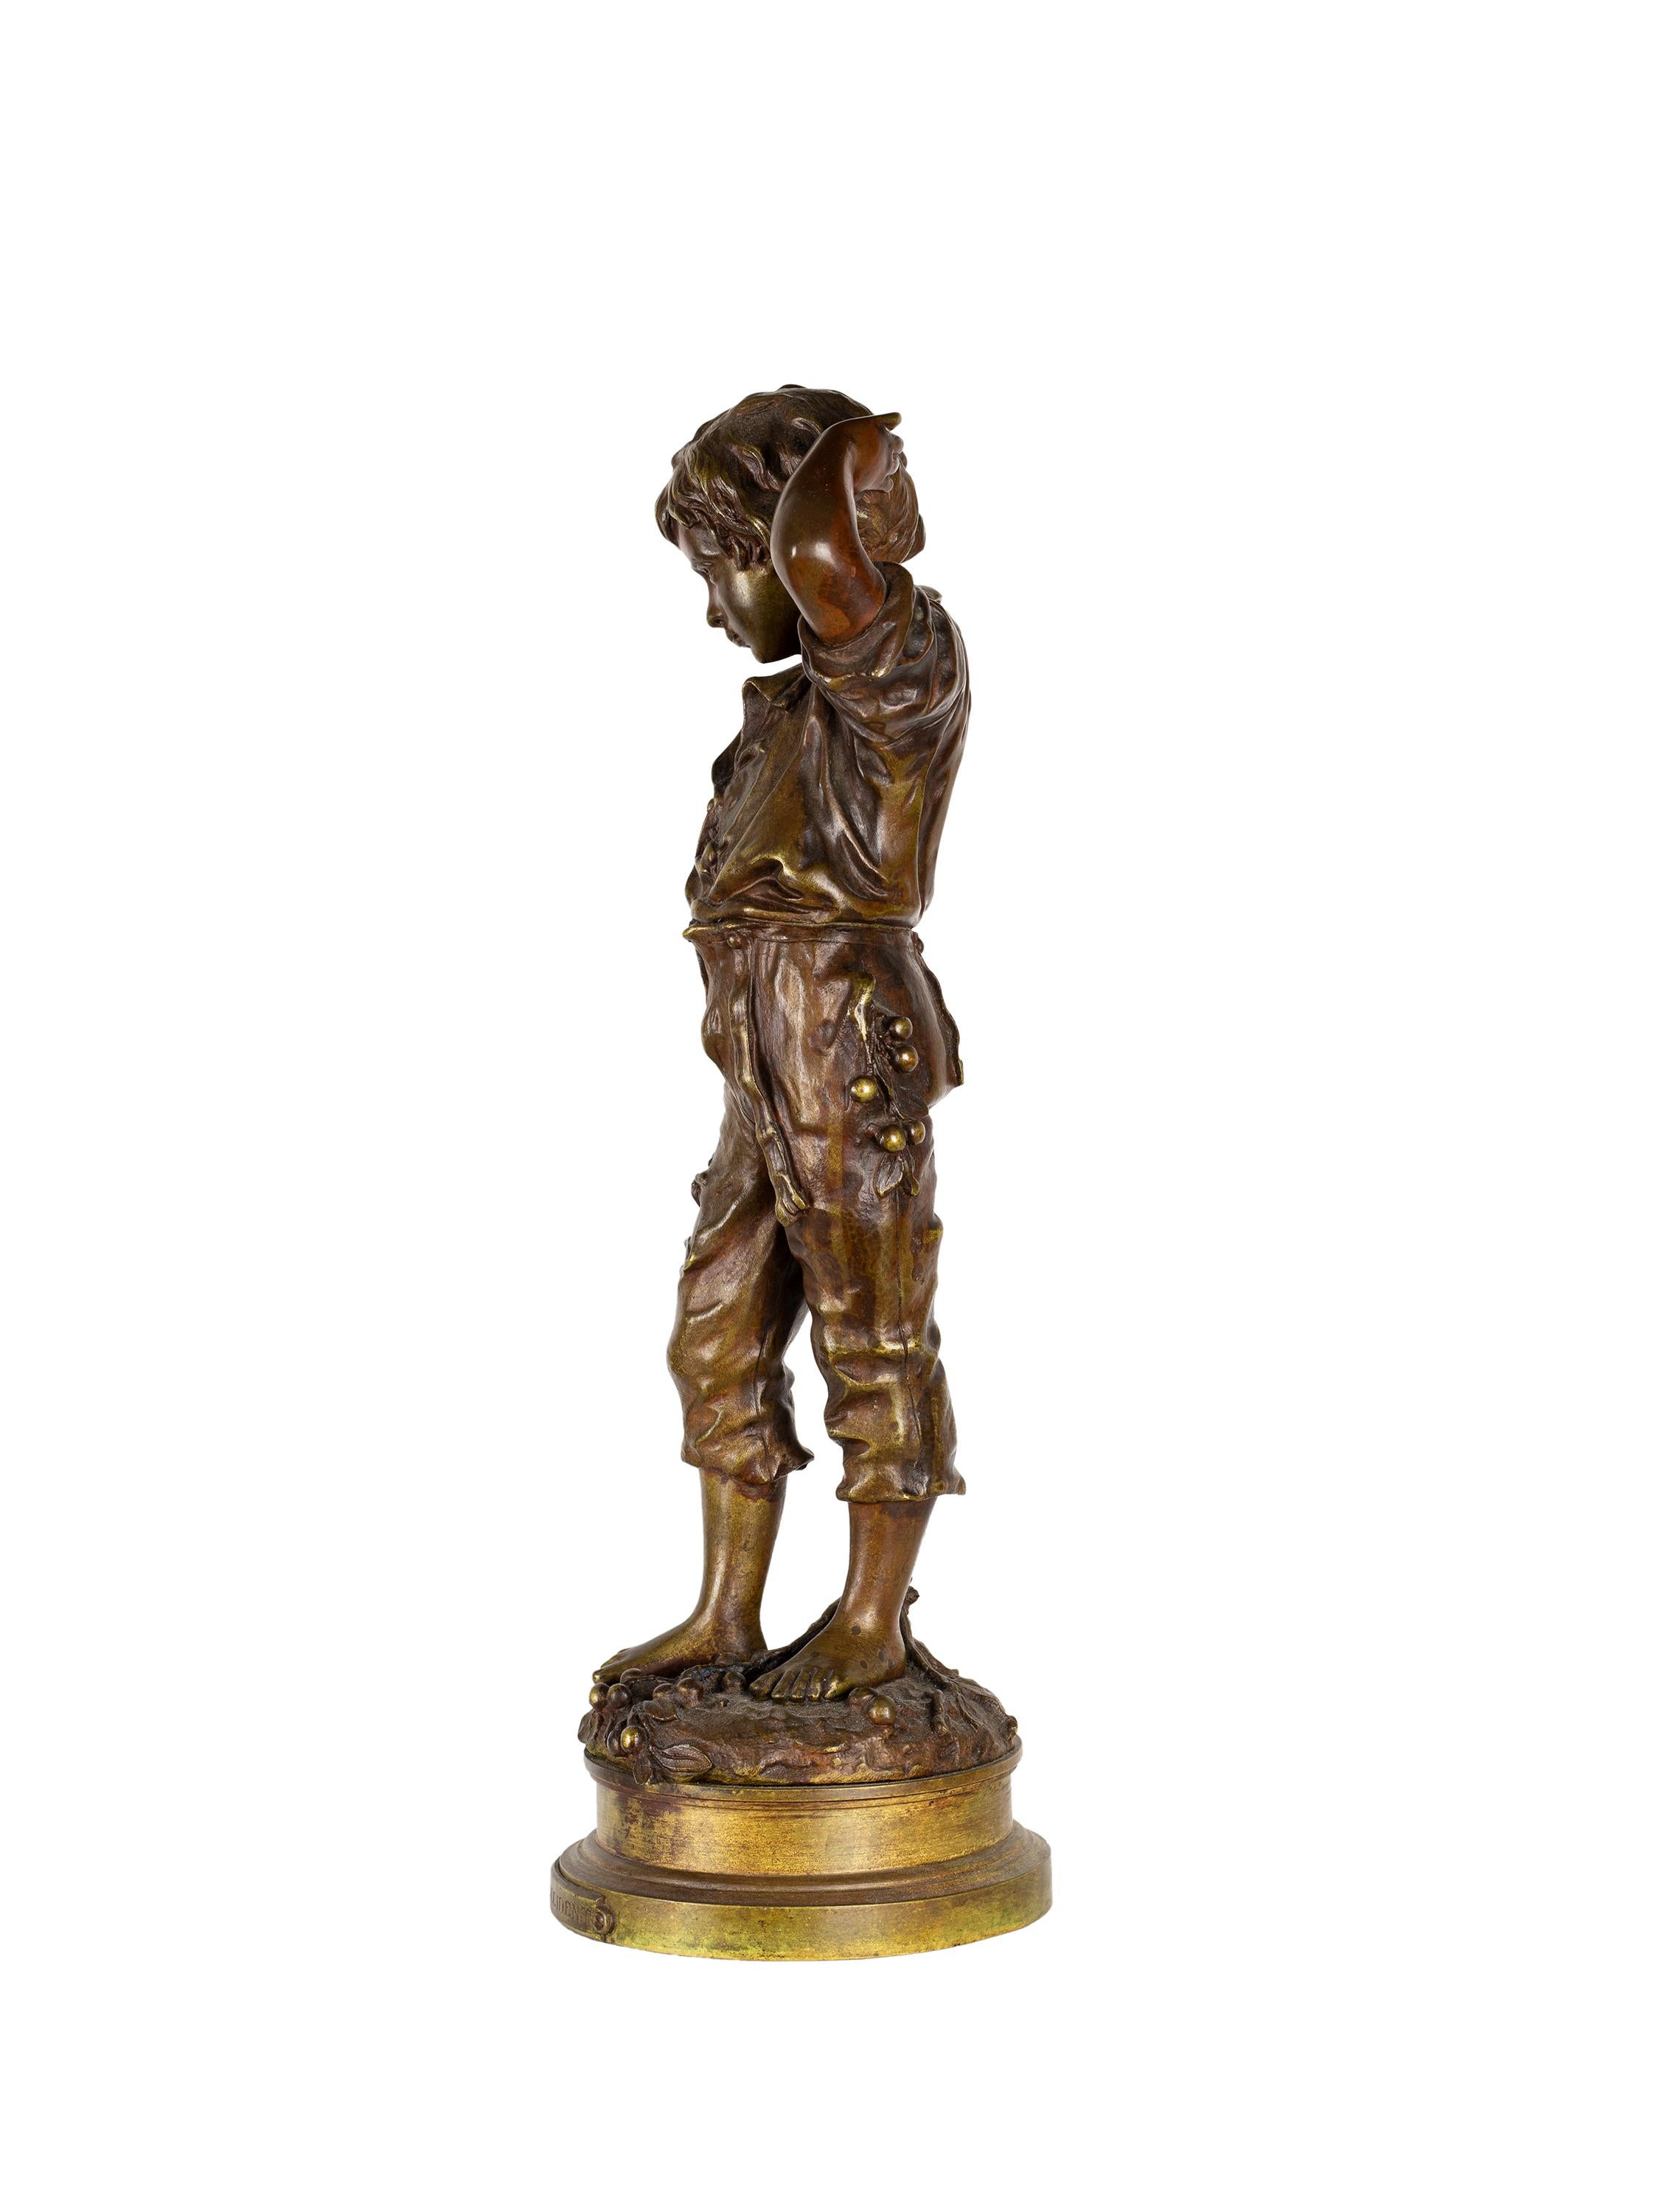 A Charles Anfrie (katalanischer Bildhauer Charles Anfrie, 1833-1905)  Bronzestatue eines Jungen 
“C. Anfrie